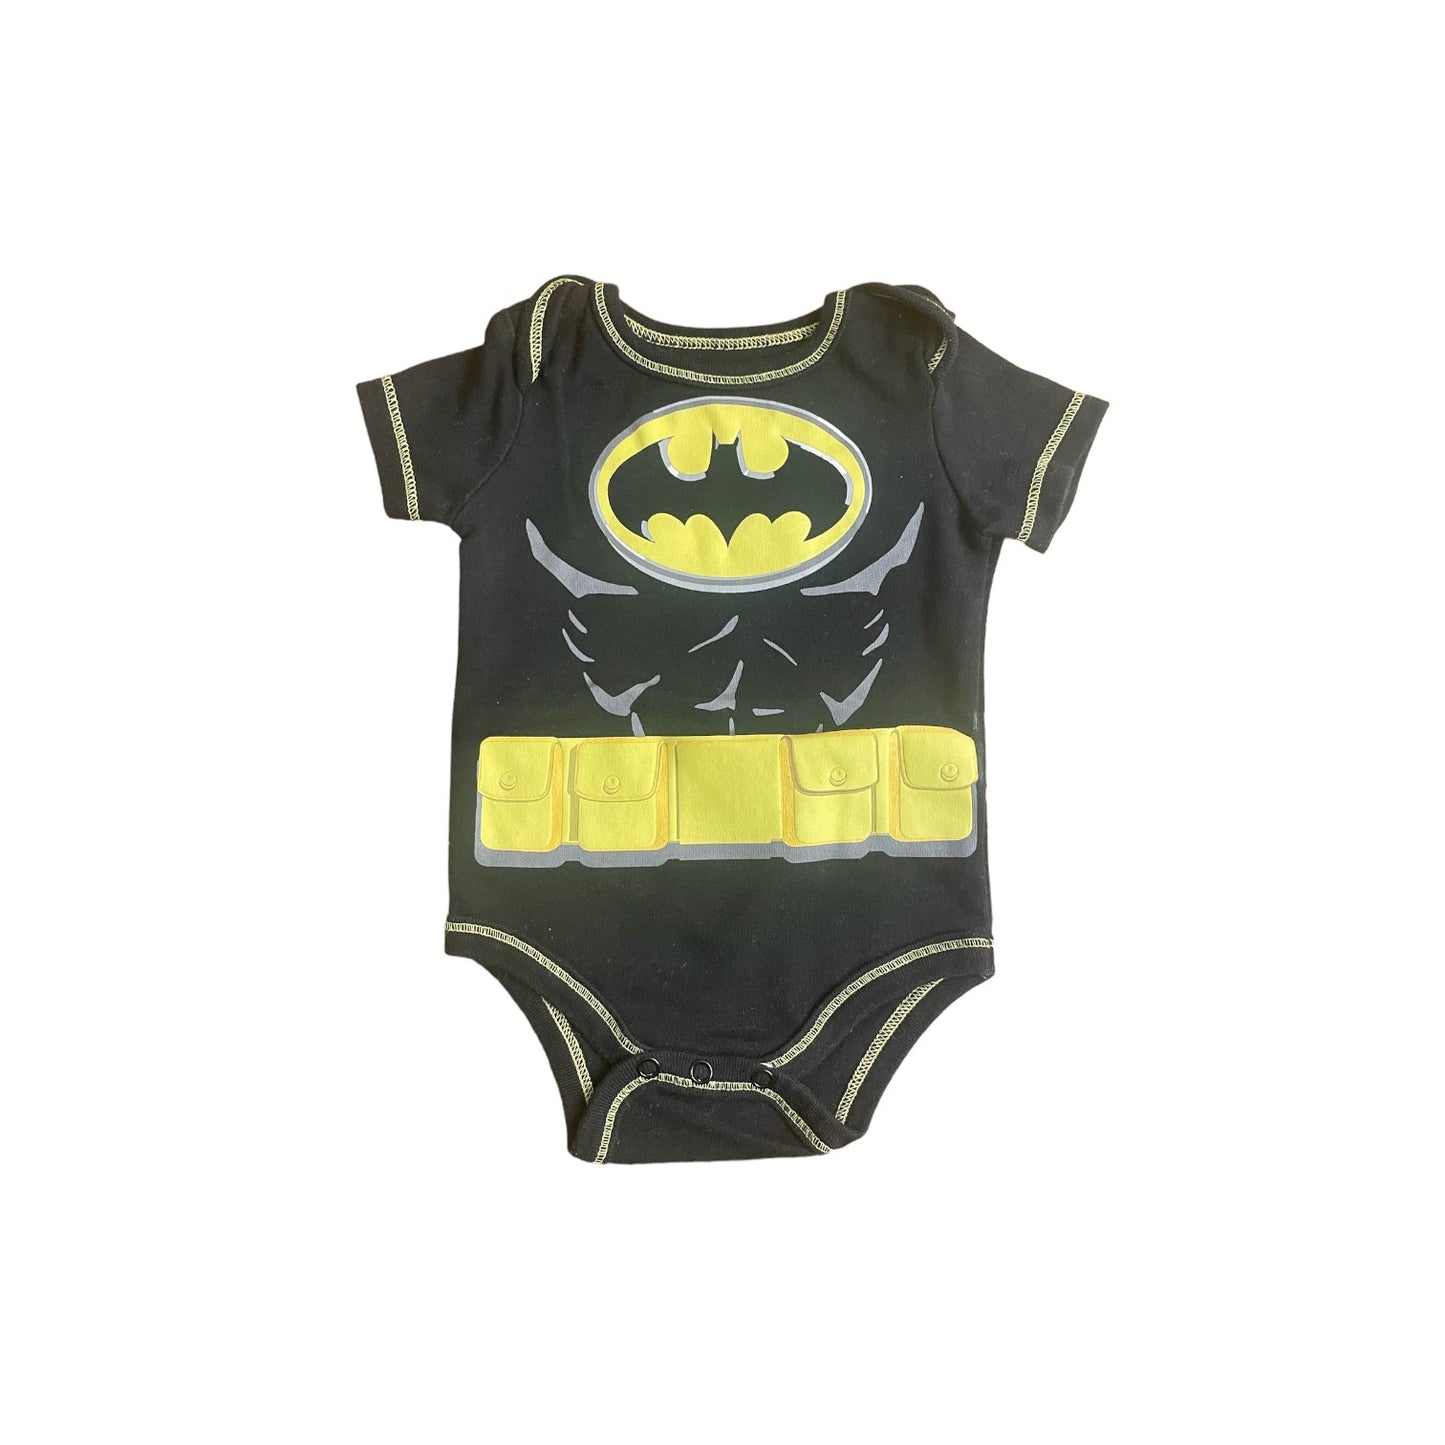 Batman Onesie Boys Size 0-3 months